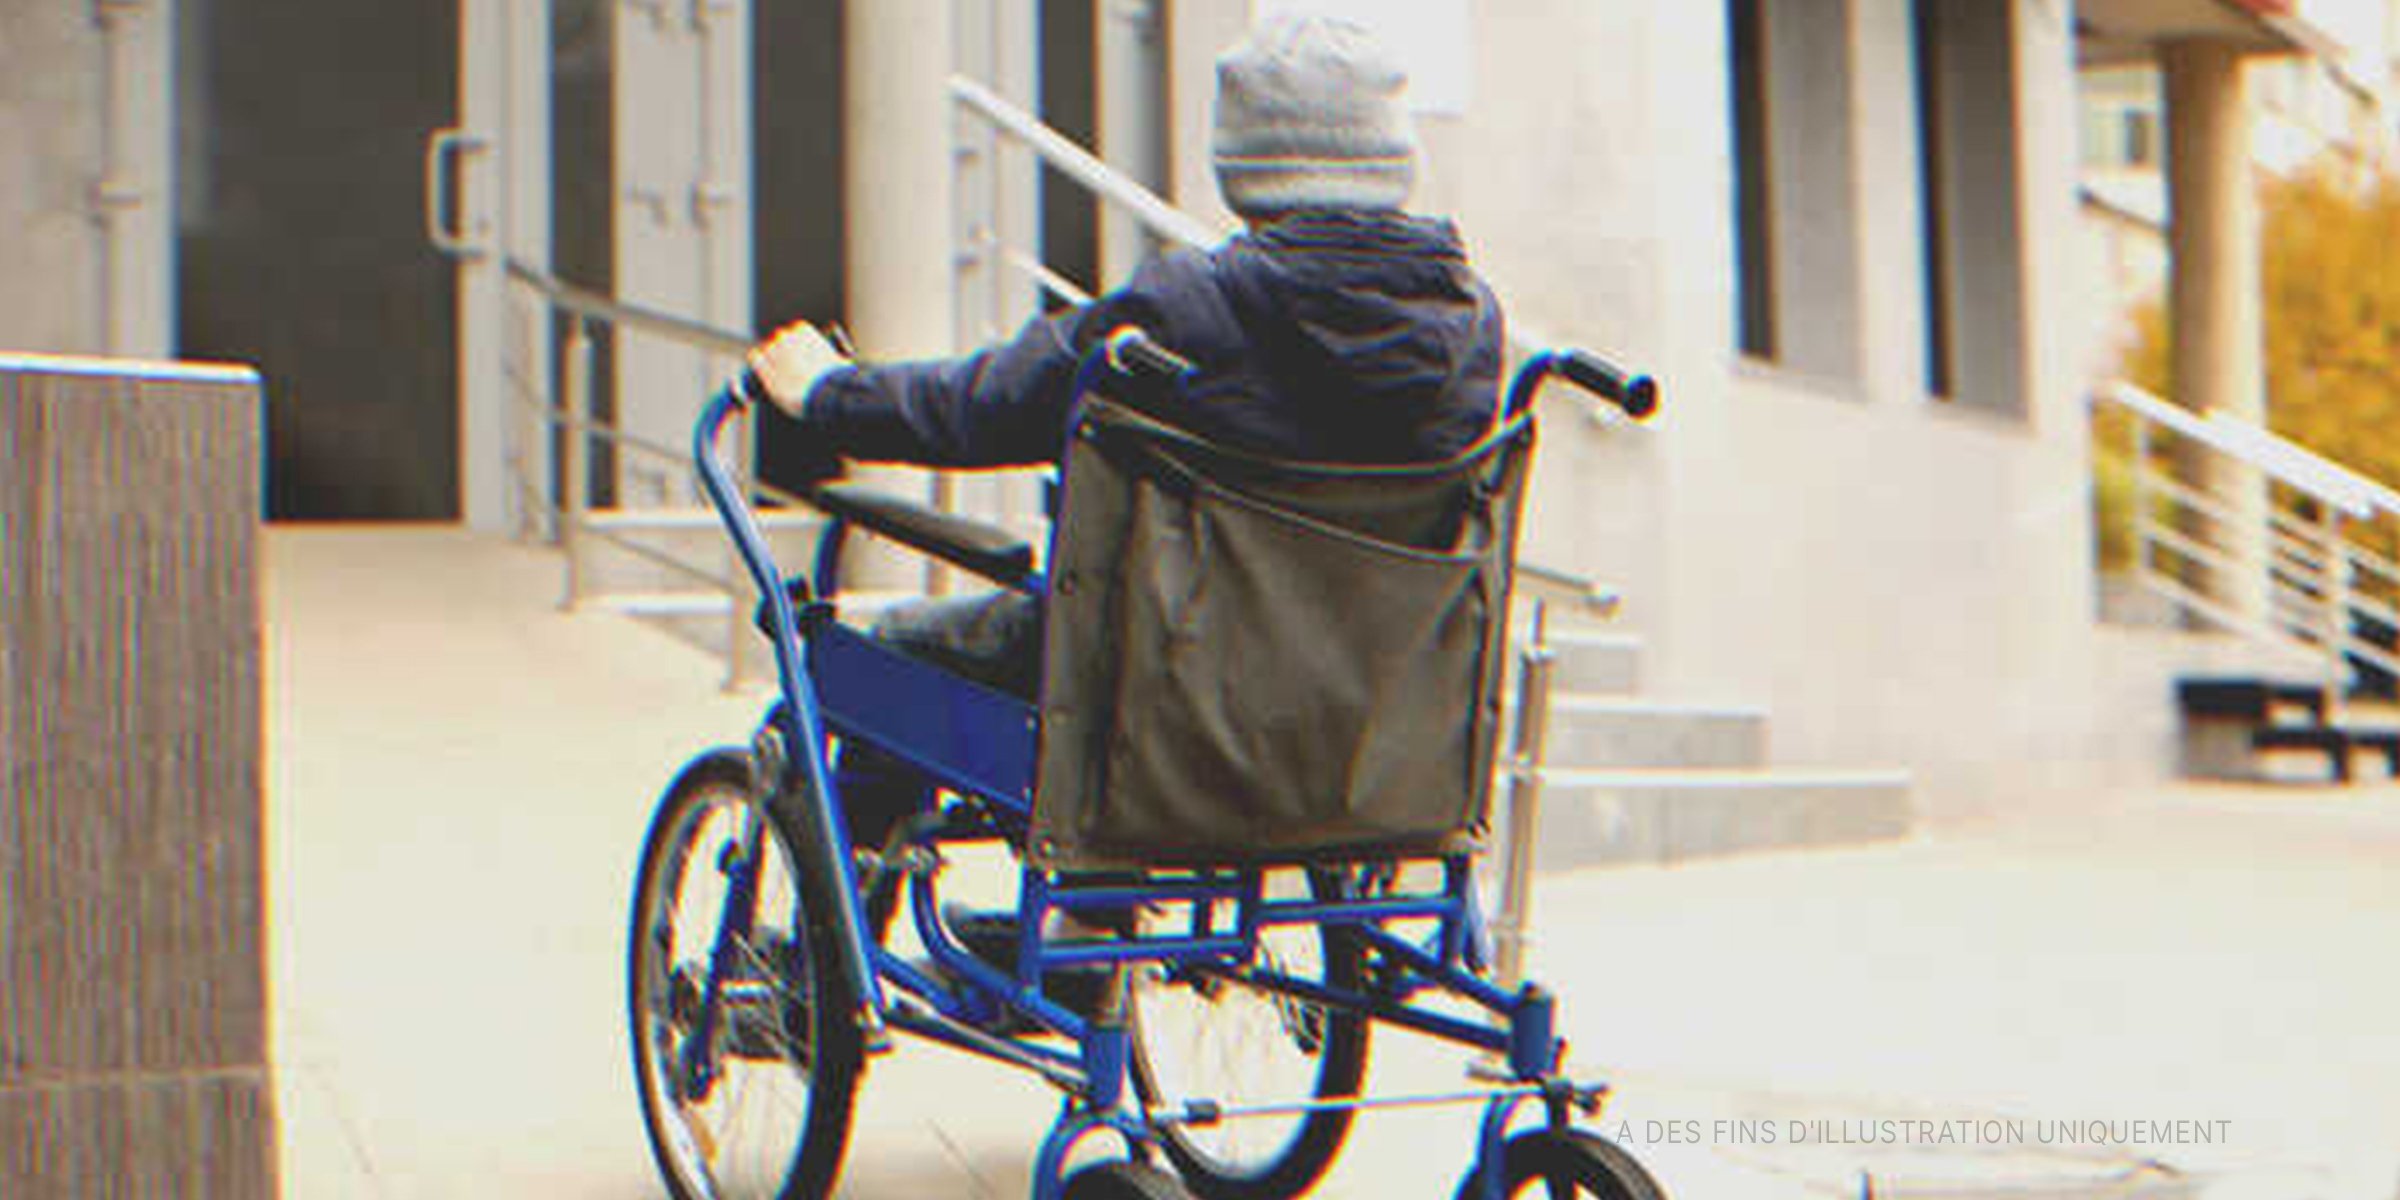 Un garçon en fauteuil roulant à l'extérieur d'un bâtiment | Source : Shutterstock